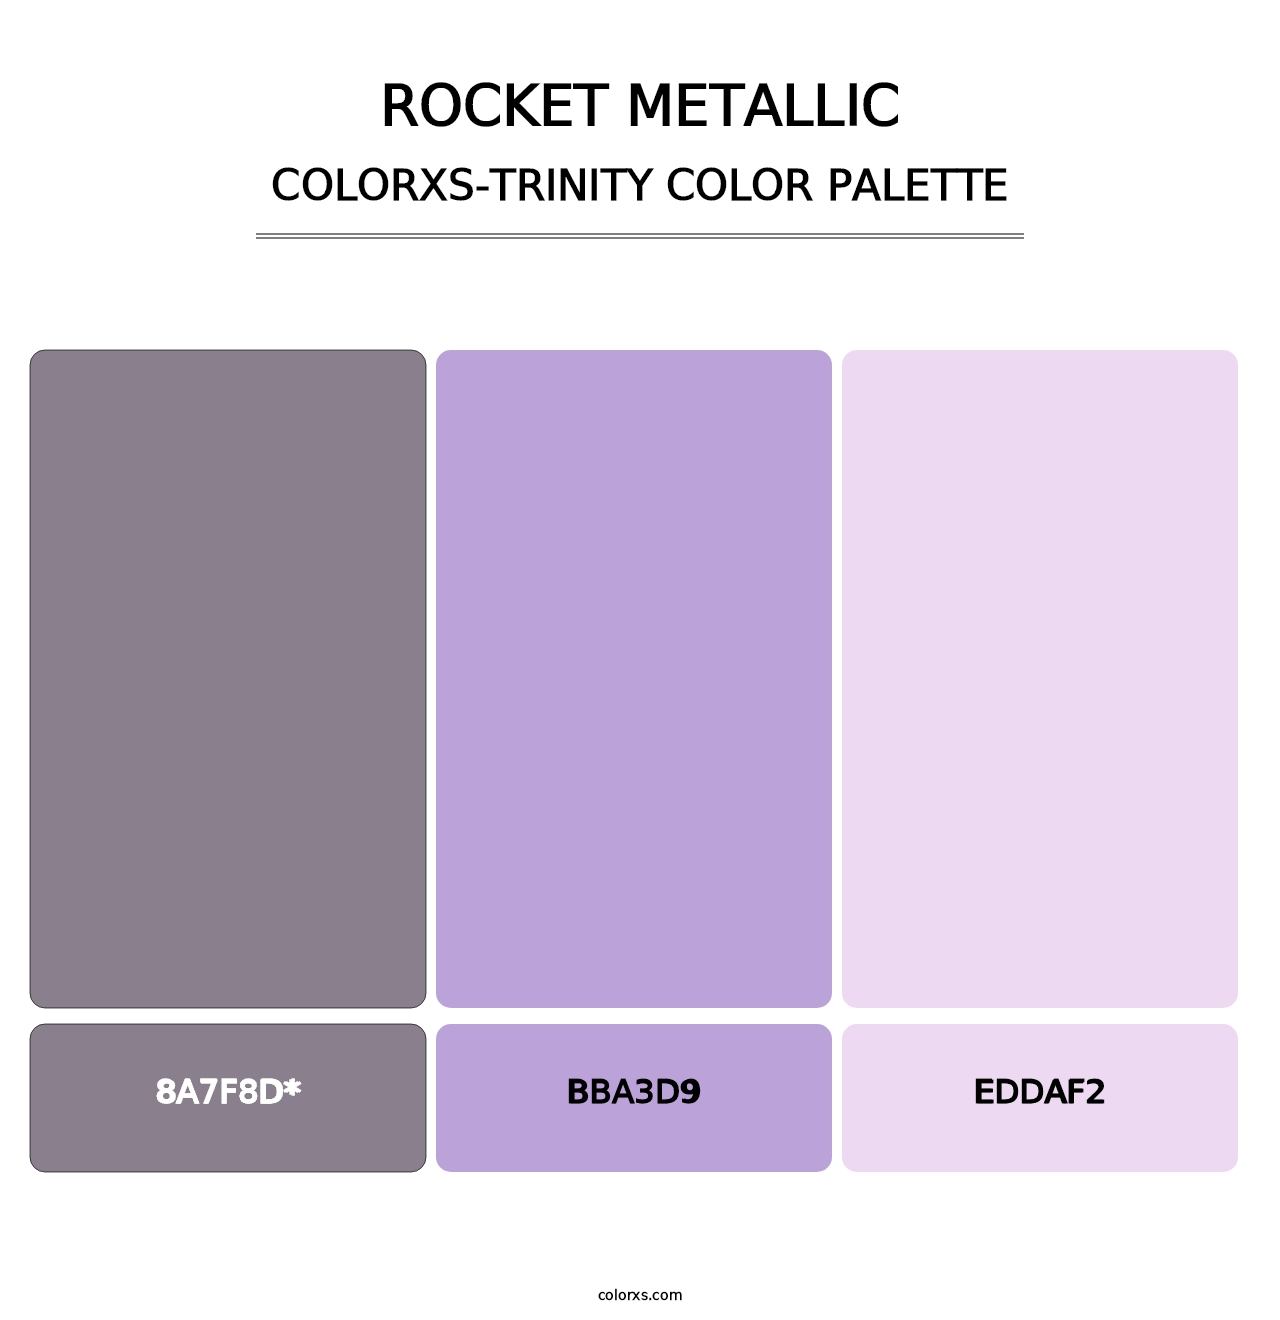 Rocket Metallic - Colorxs Trinity Palette